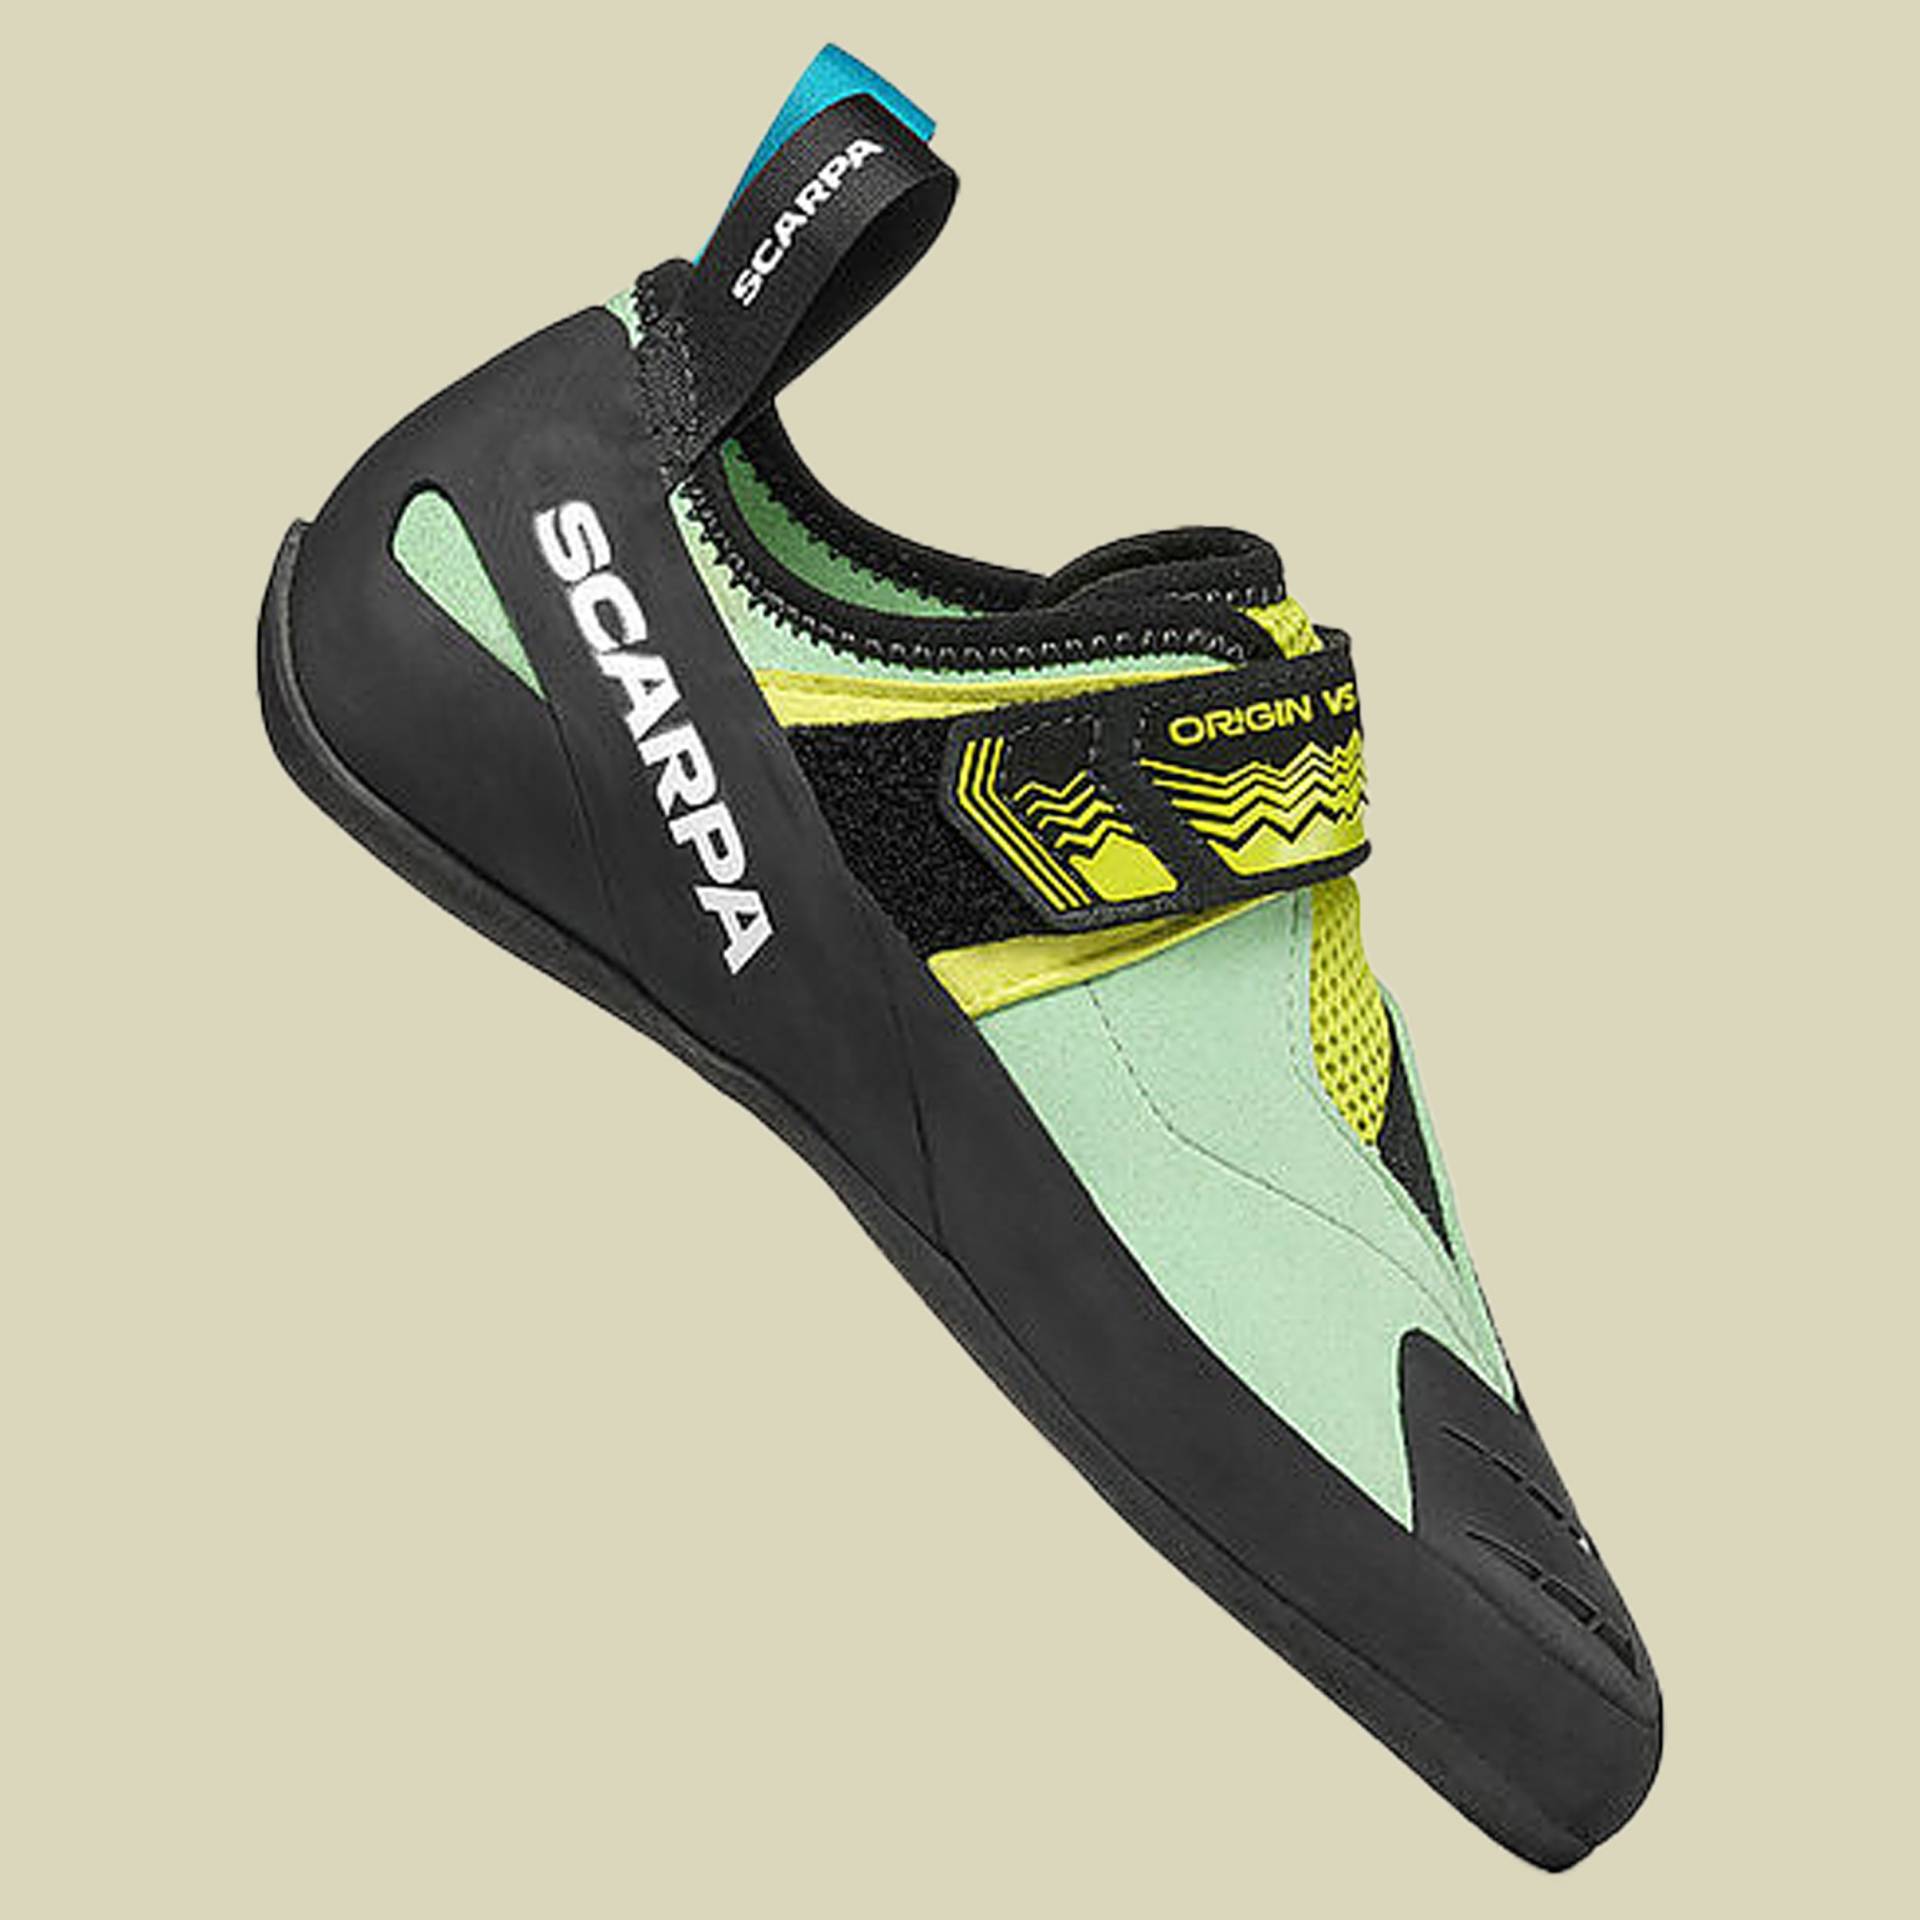 Origin VS Women Größe 40,5 Farbe pastel green/lime von Scarpa Schuhe